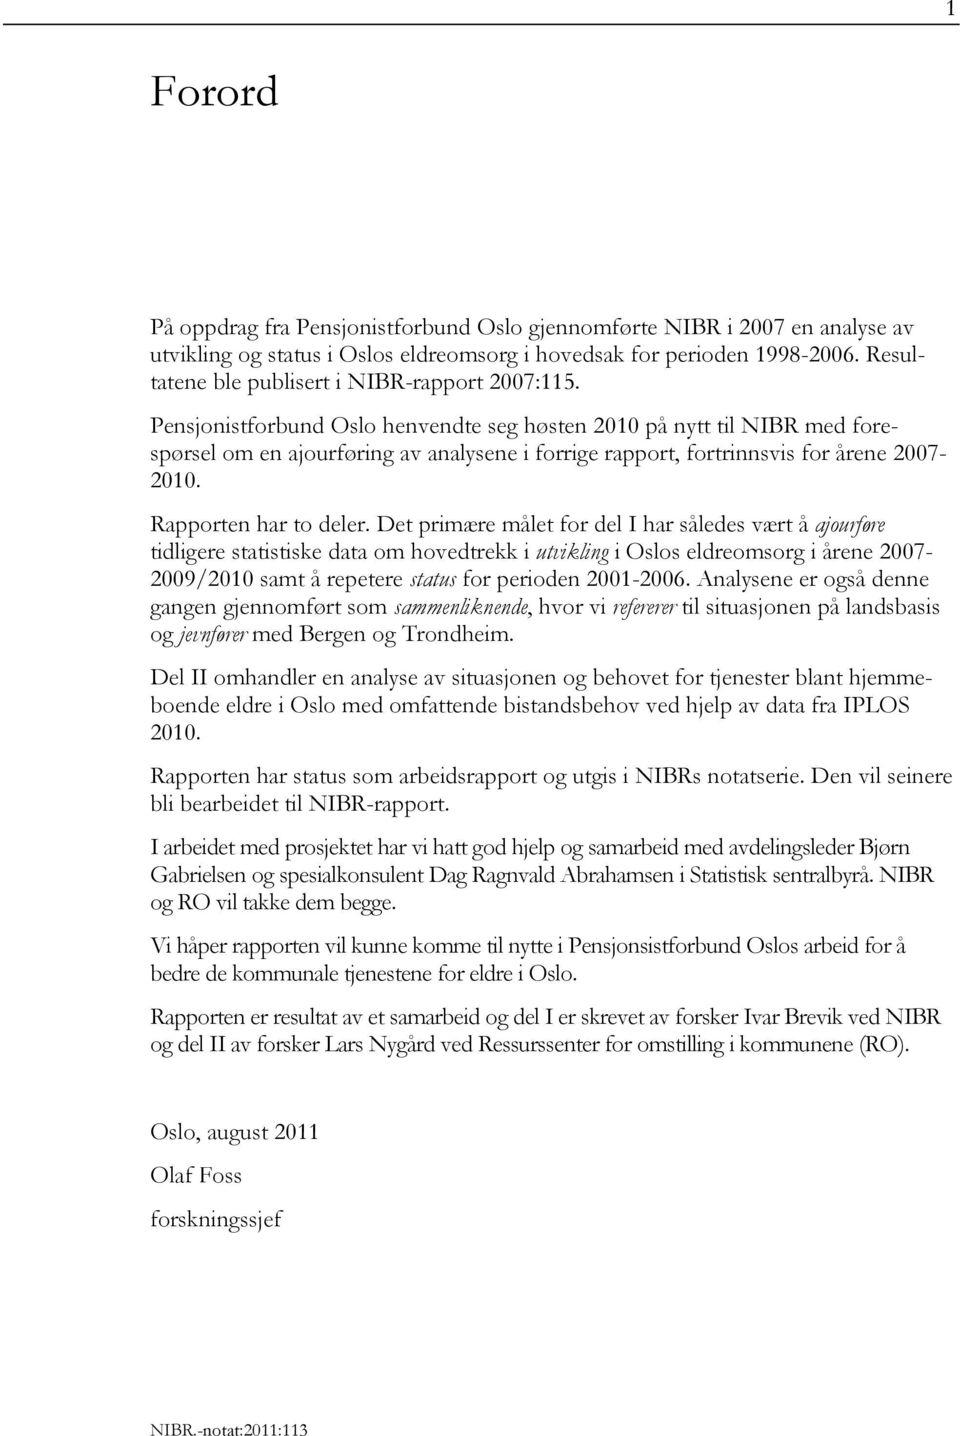 Pensjonistforbund Oslo henvendte seg høsten 2010 på nytt til NIBR med forespørsel om en ajourføring av analysene i forrige rapport, fortrinnsvis for årene 2007-2010. Rapporten har to deler.